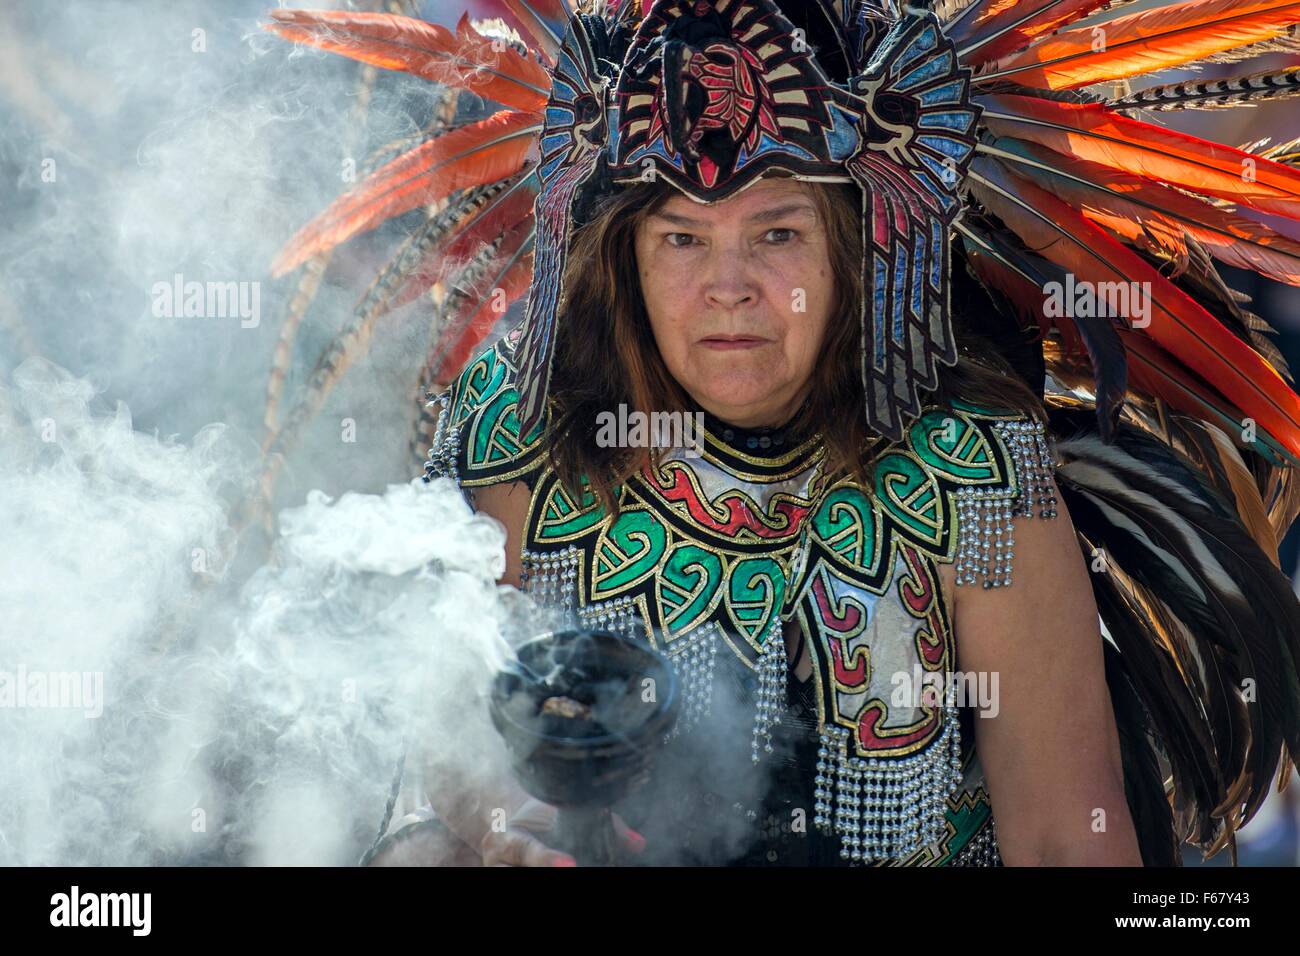 Un guérisseur héritage aztèque est titulaire d'un chaudron de nettoyage ethnique au cours de la fumée Heritage Festival latino annuel le 26 septembre 2014 à Des Moines, Iowa. Banque D'Images